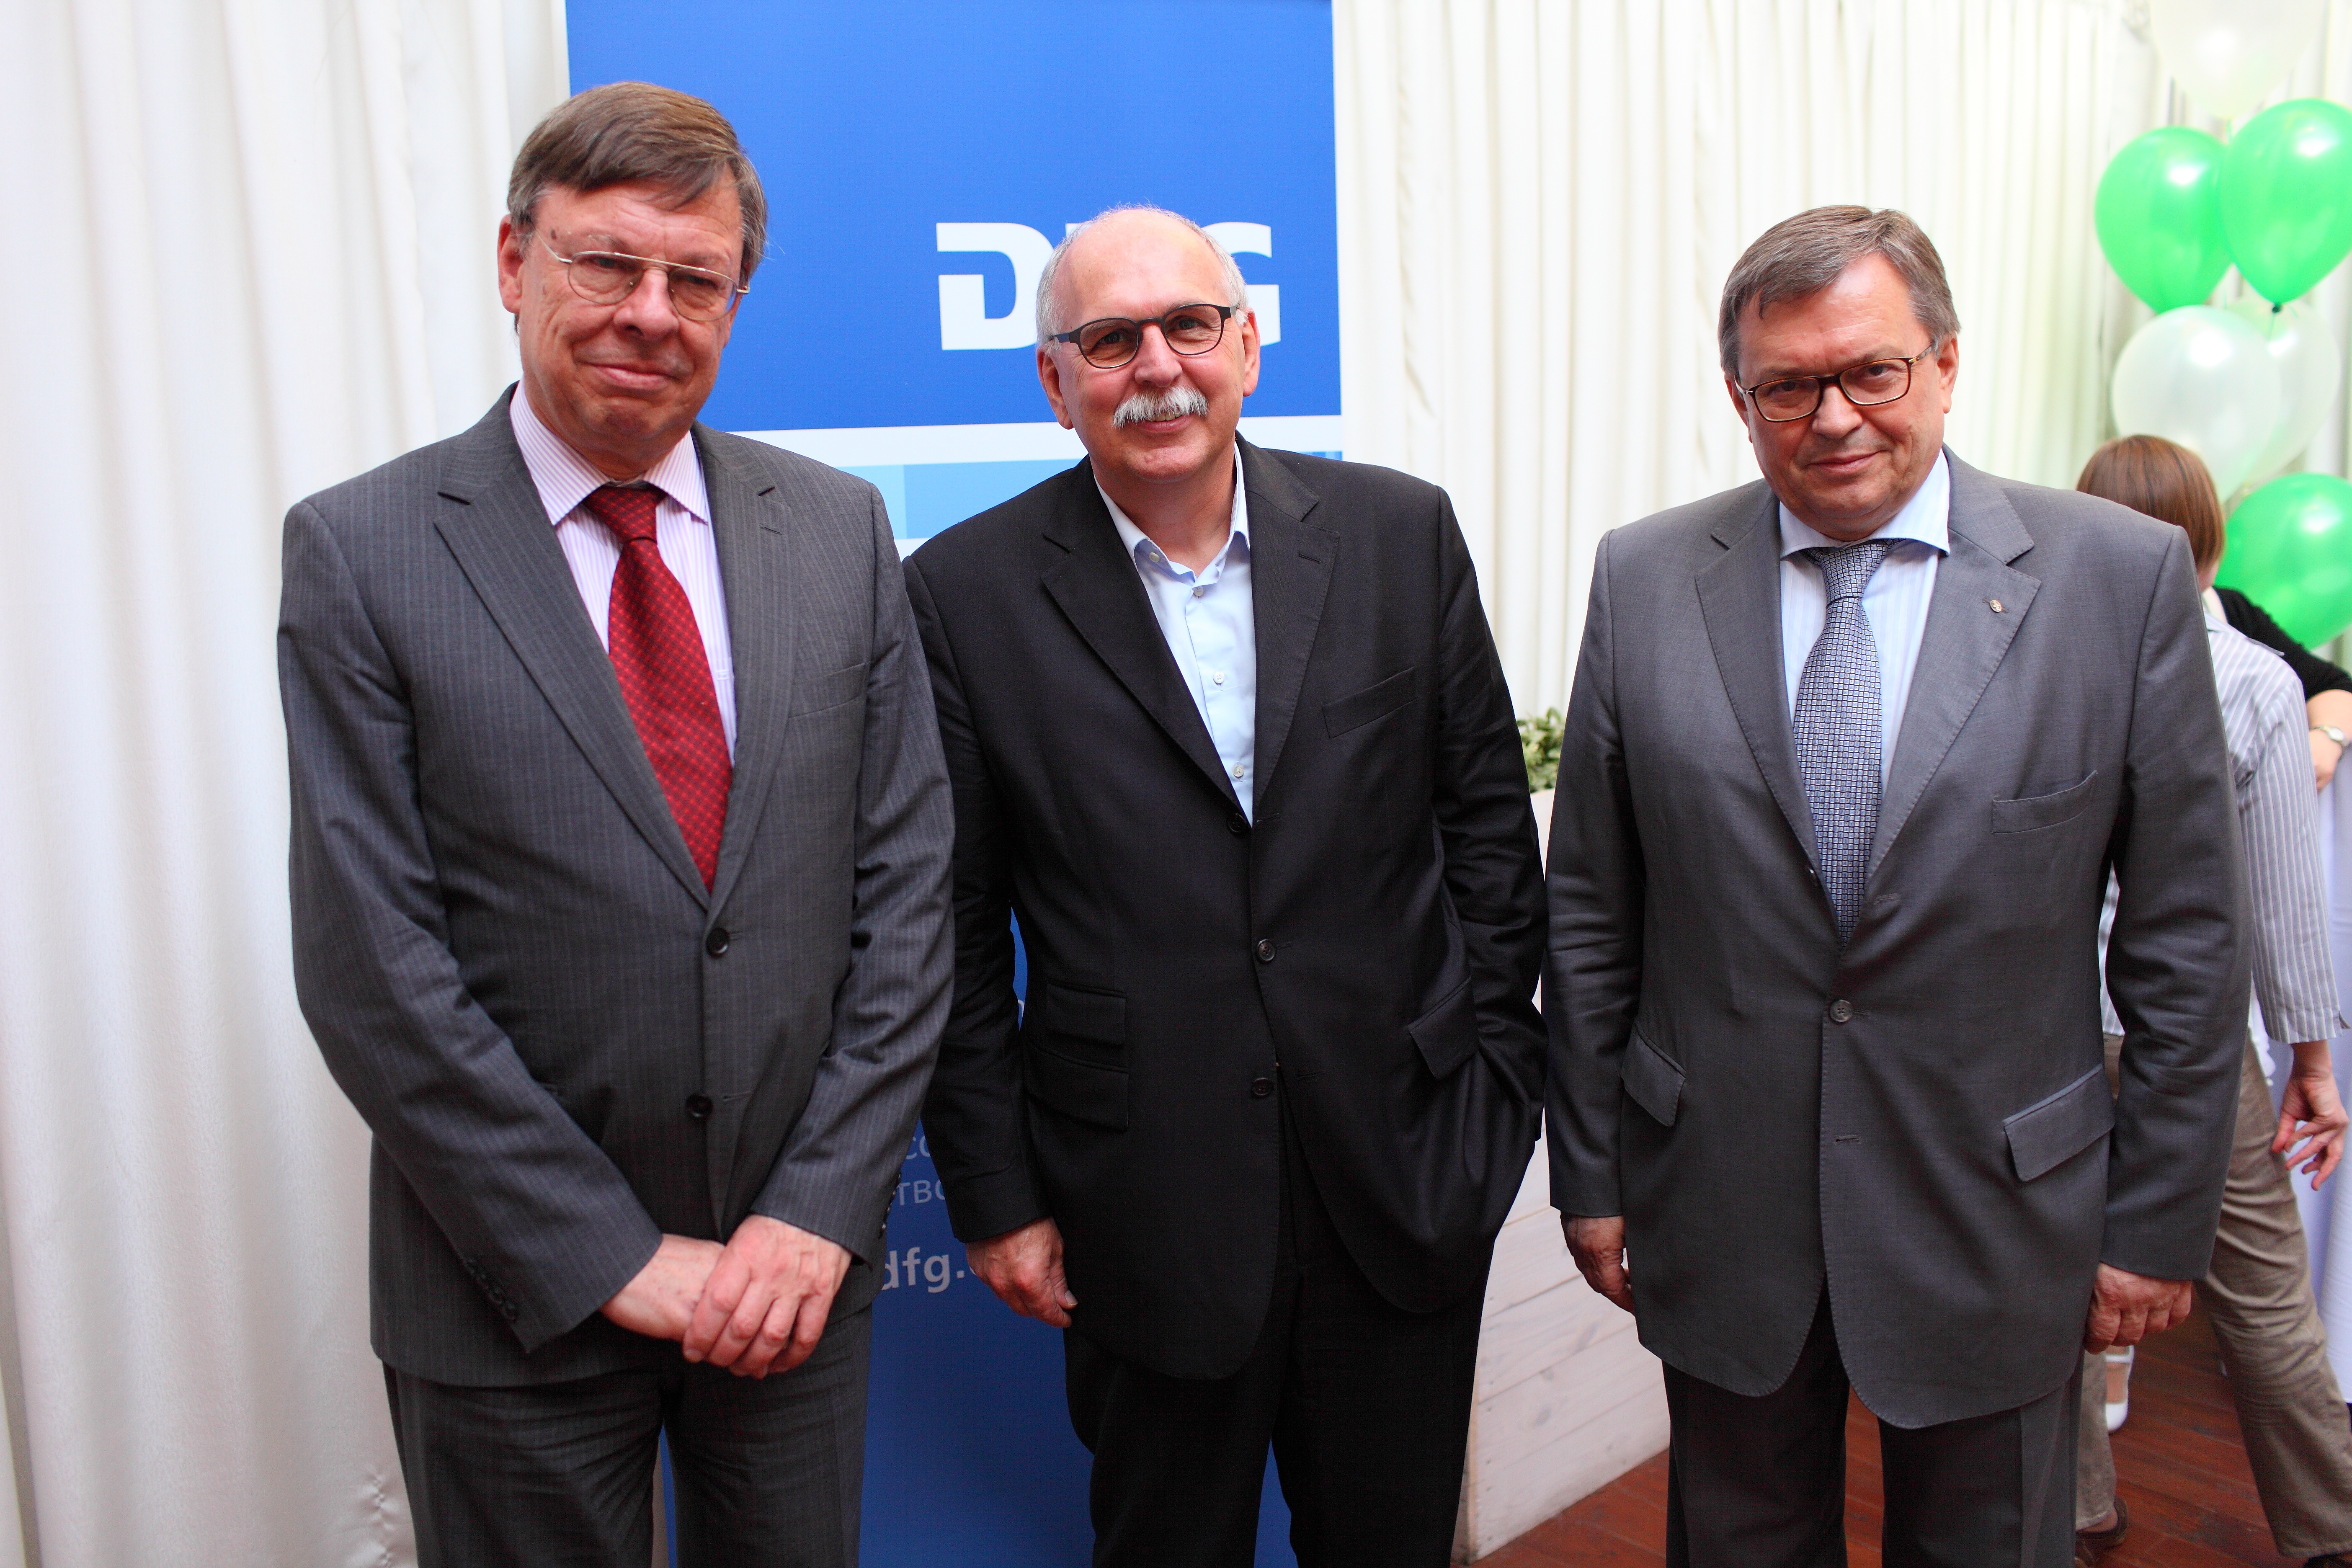 Sommerempfang 2012: Botschafter Brandenburg, DFG-Präsident Kleiner, RFFI-Vorsitzender Panchenko